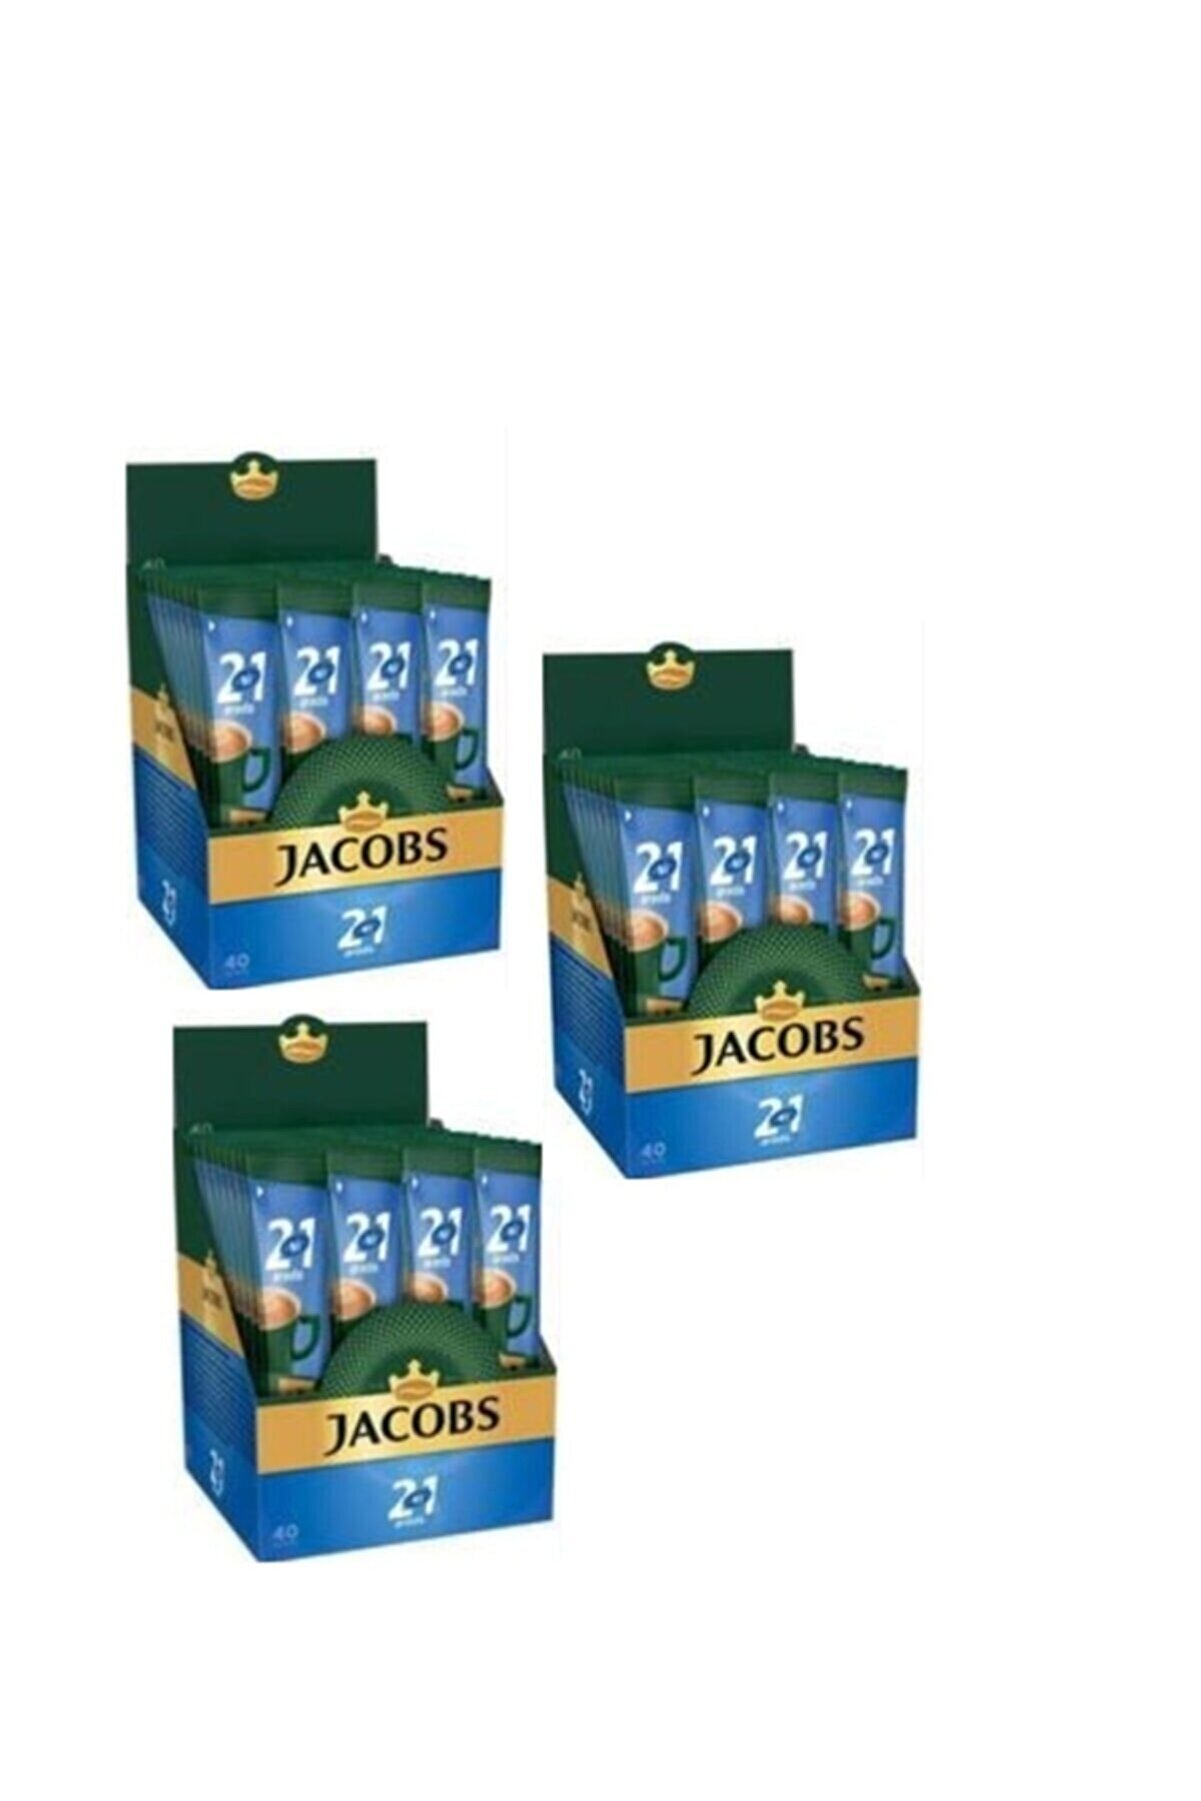 Jacobs 2si1 Arada Kahve 120adet (40 X 3paket)